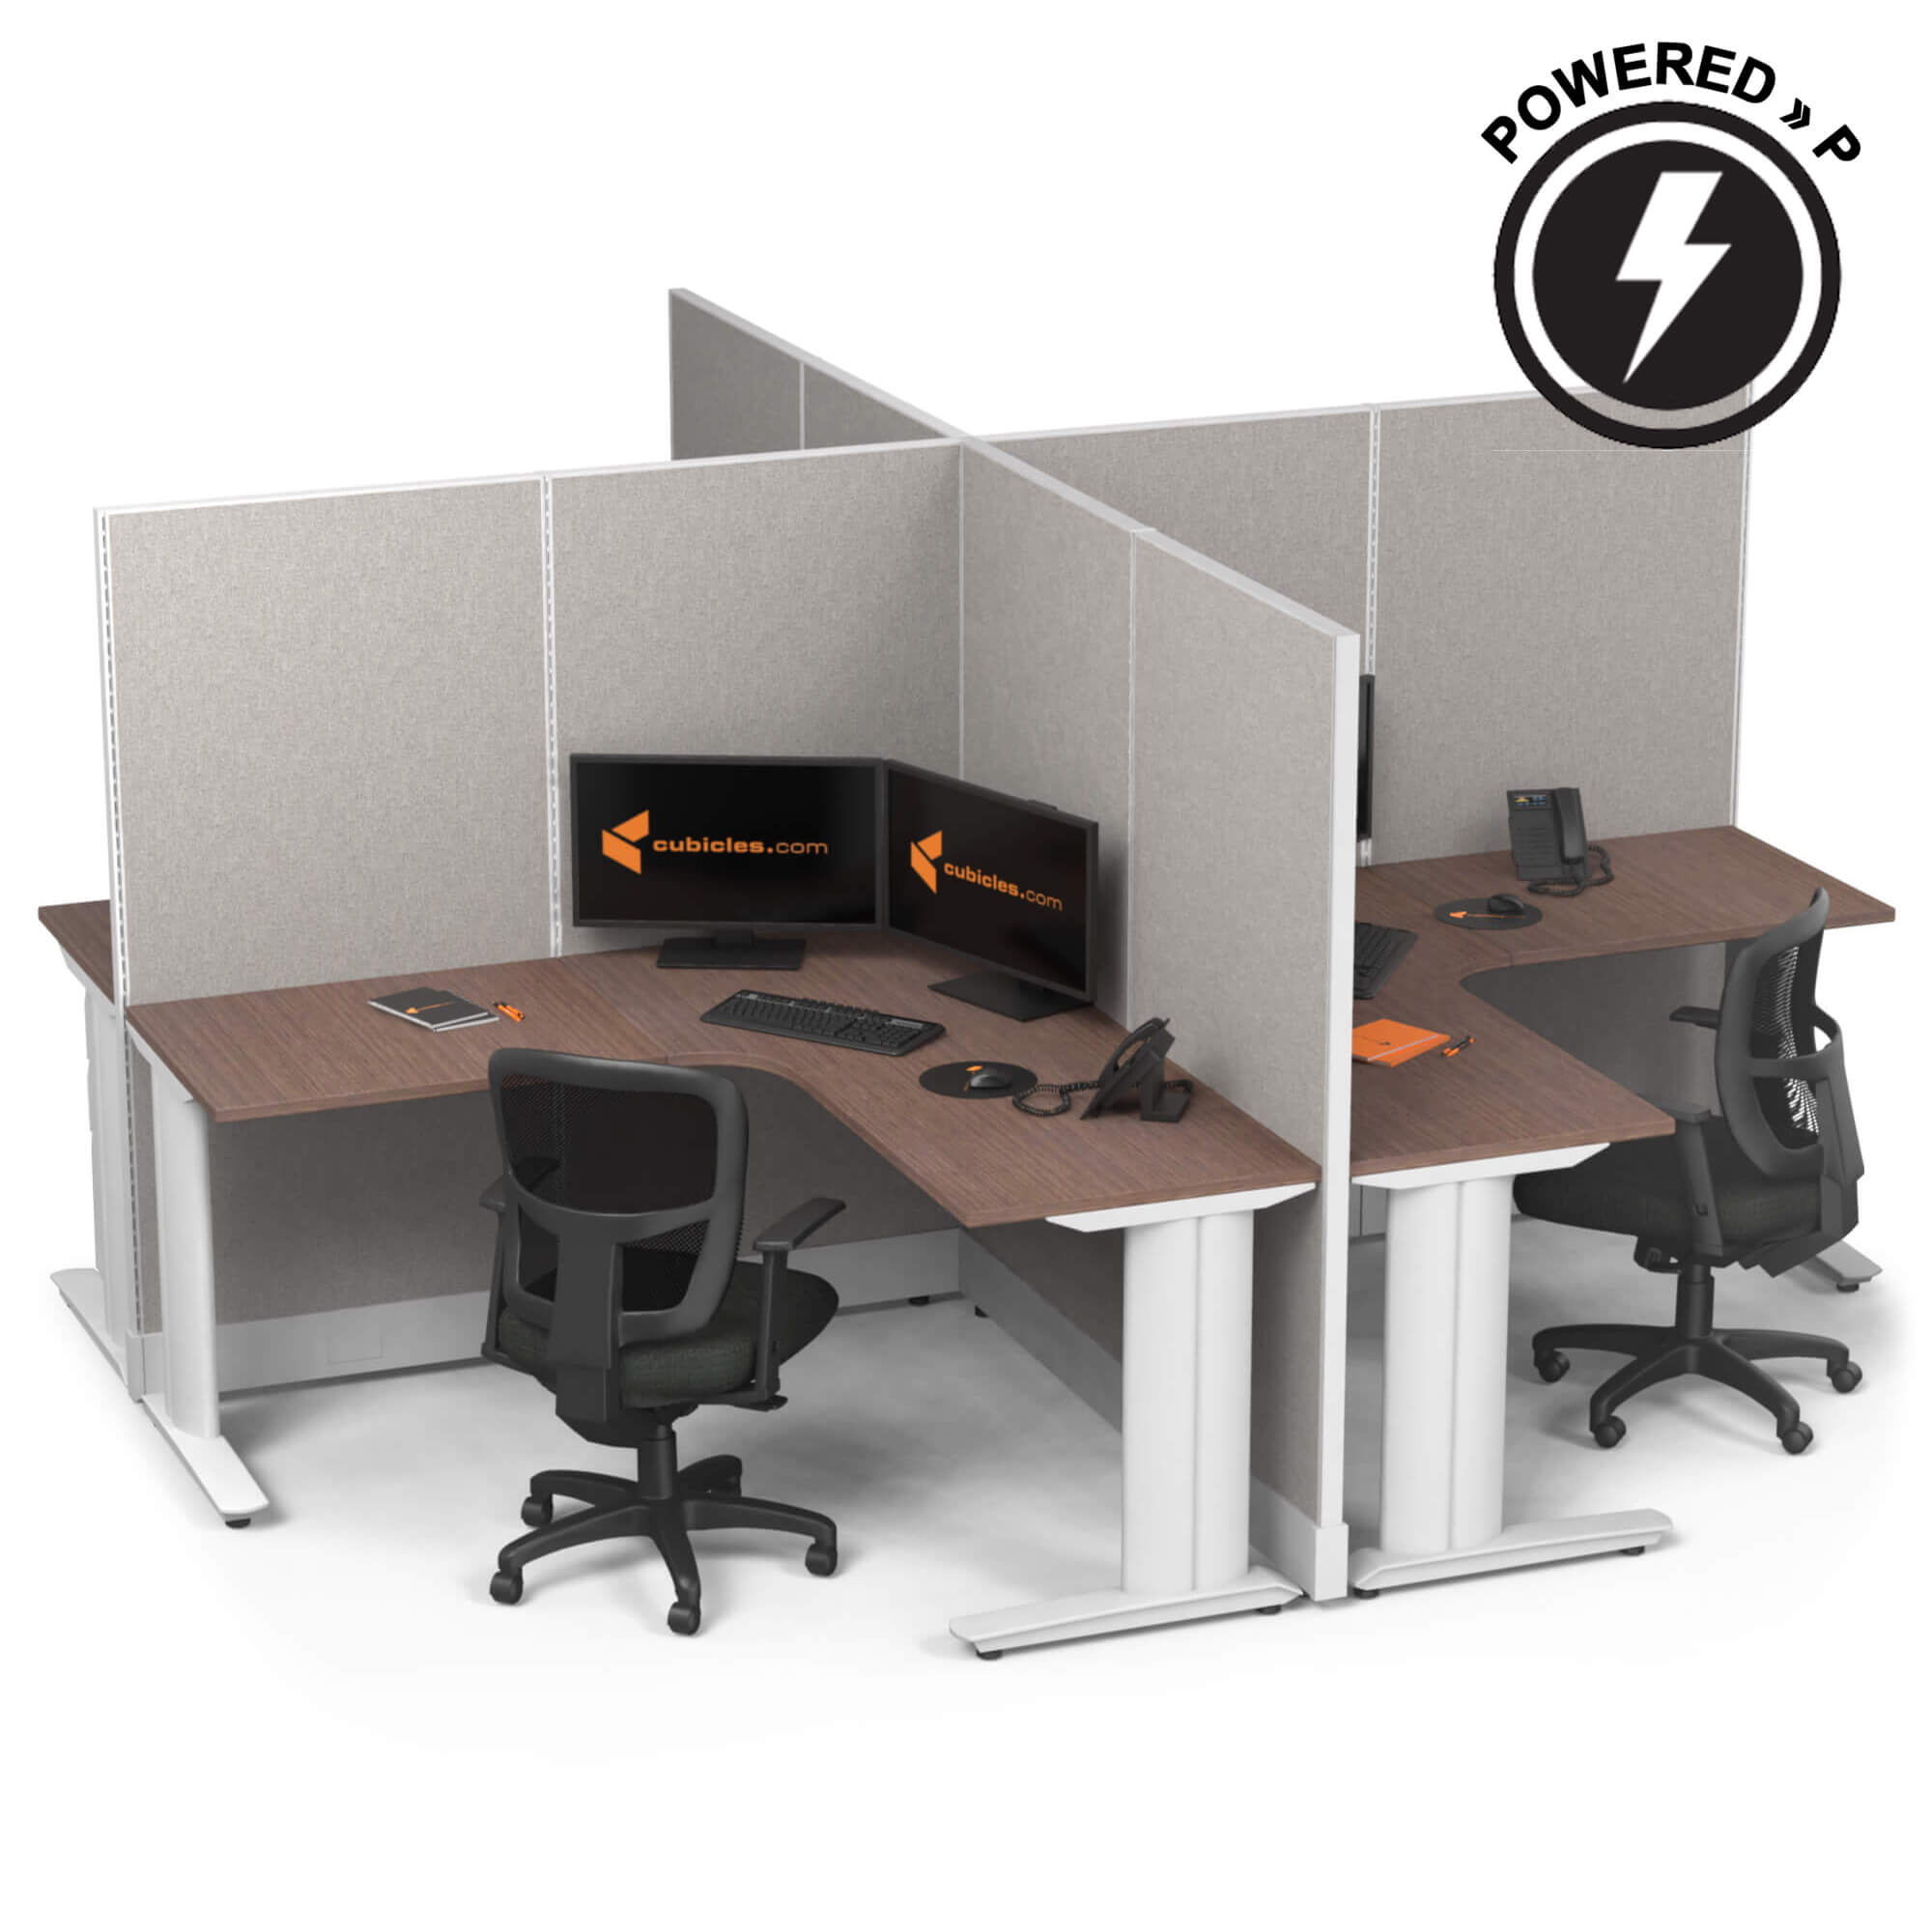 cubicle-desk-x-cluster-workstation-powered-sign.jpg